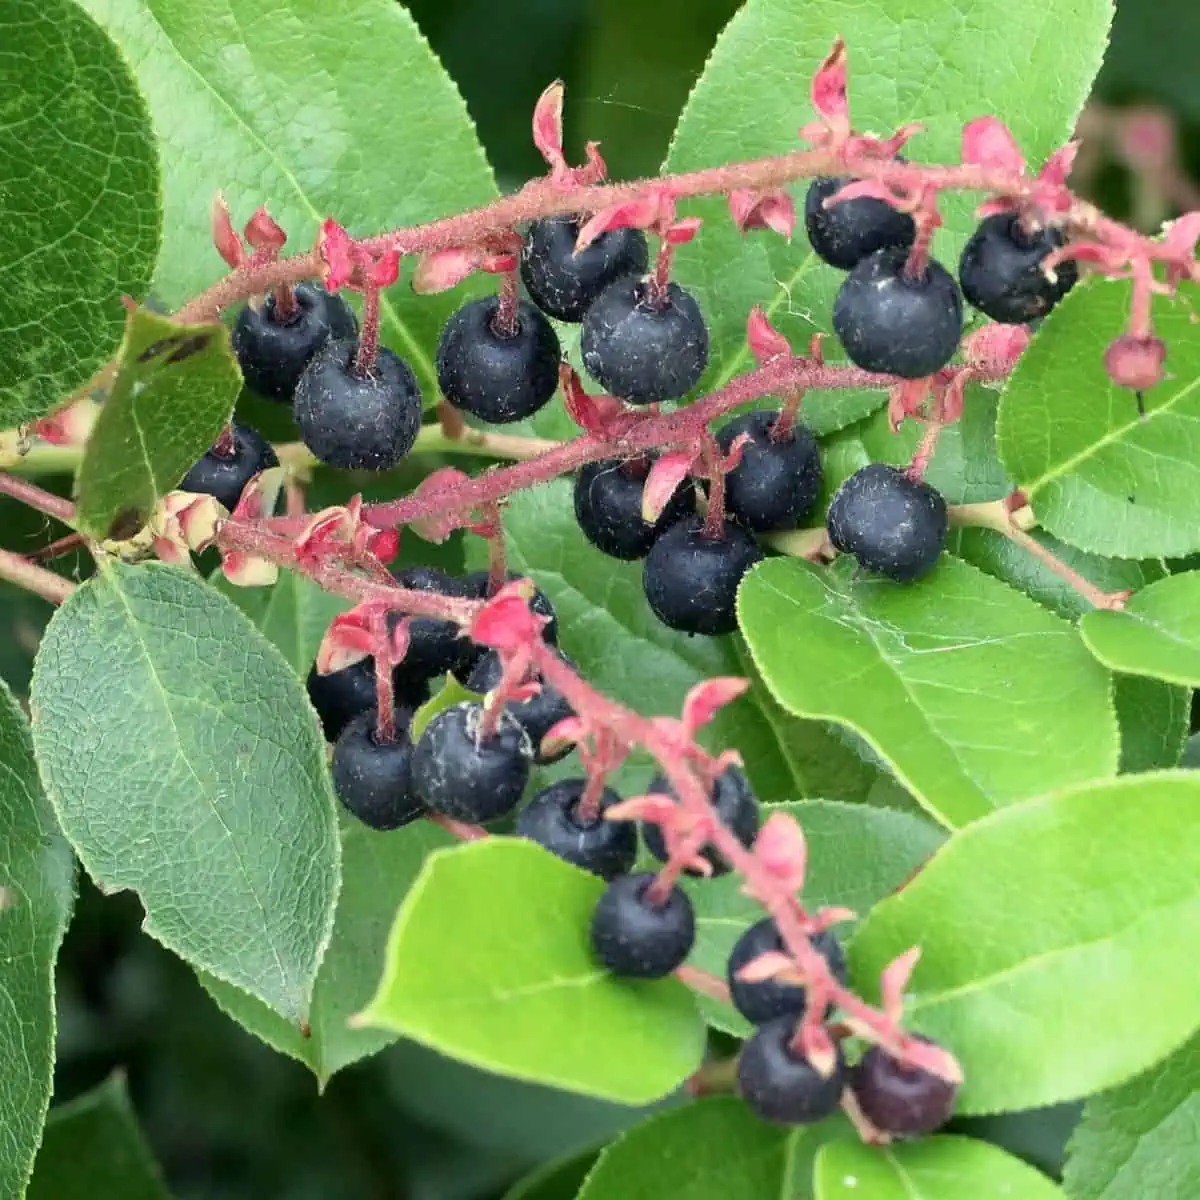 Salal berries on vine. 